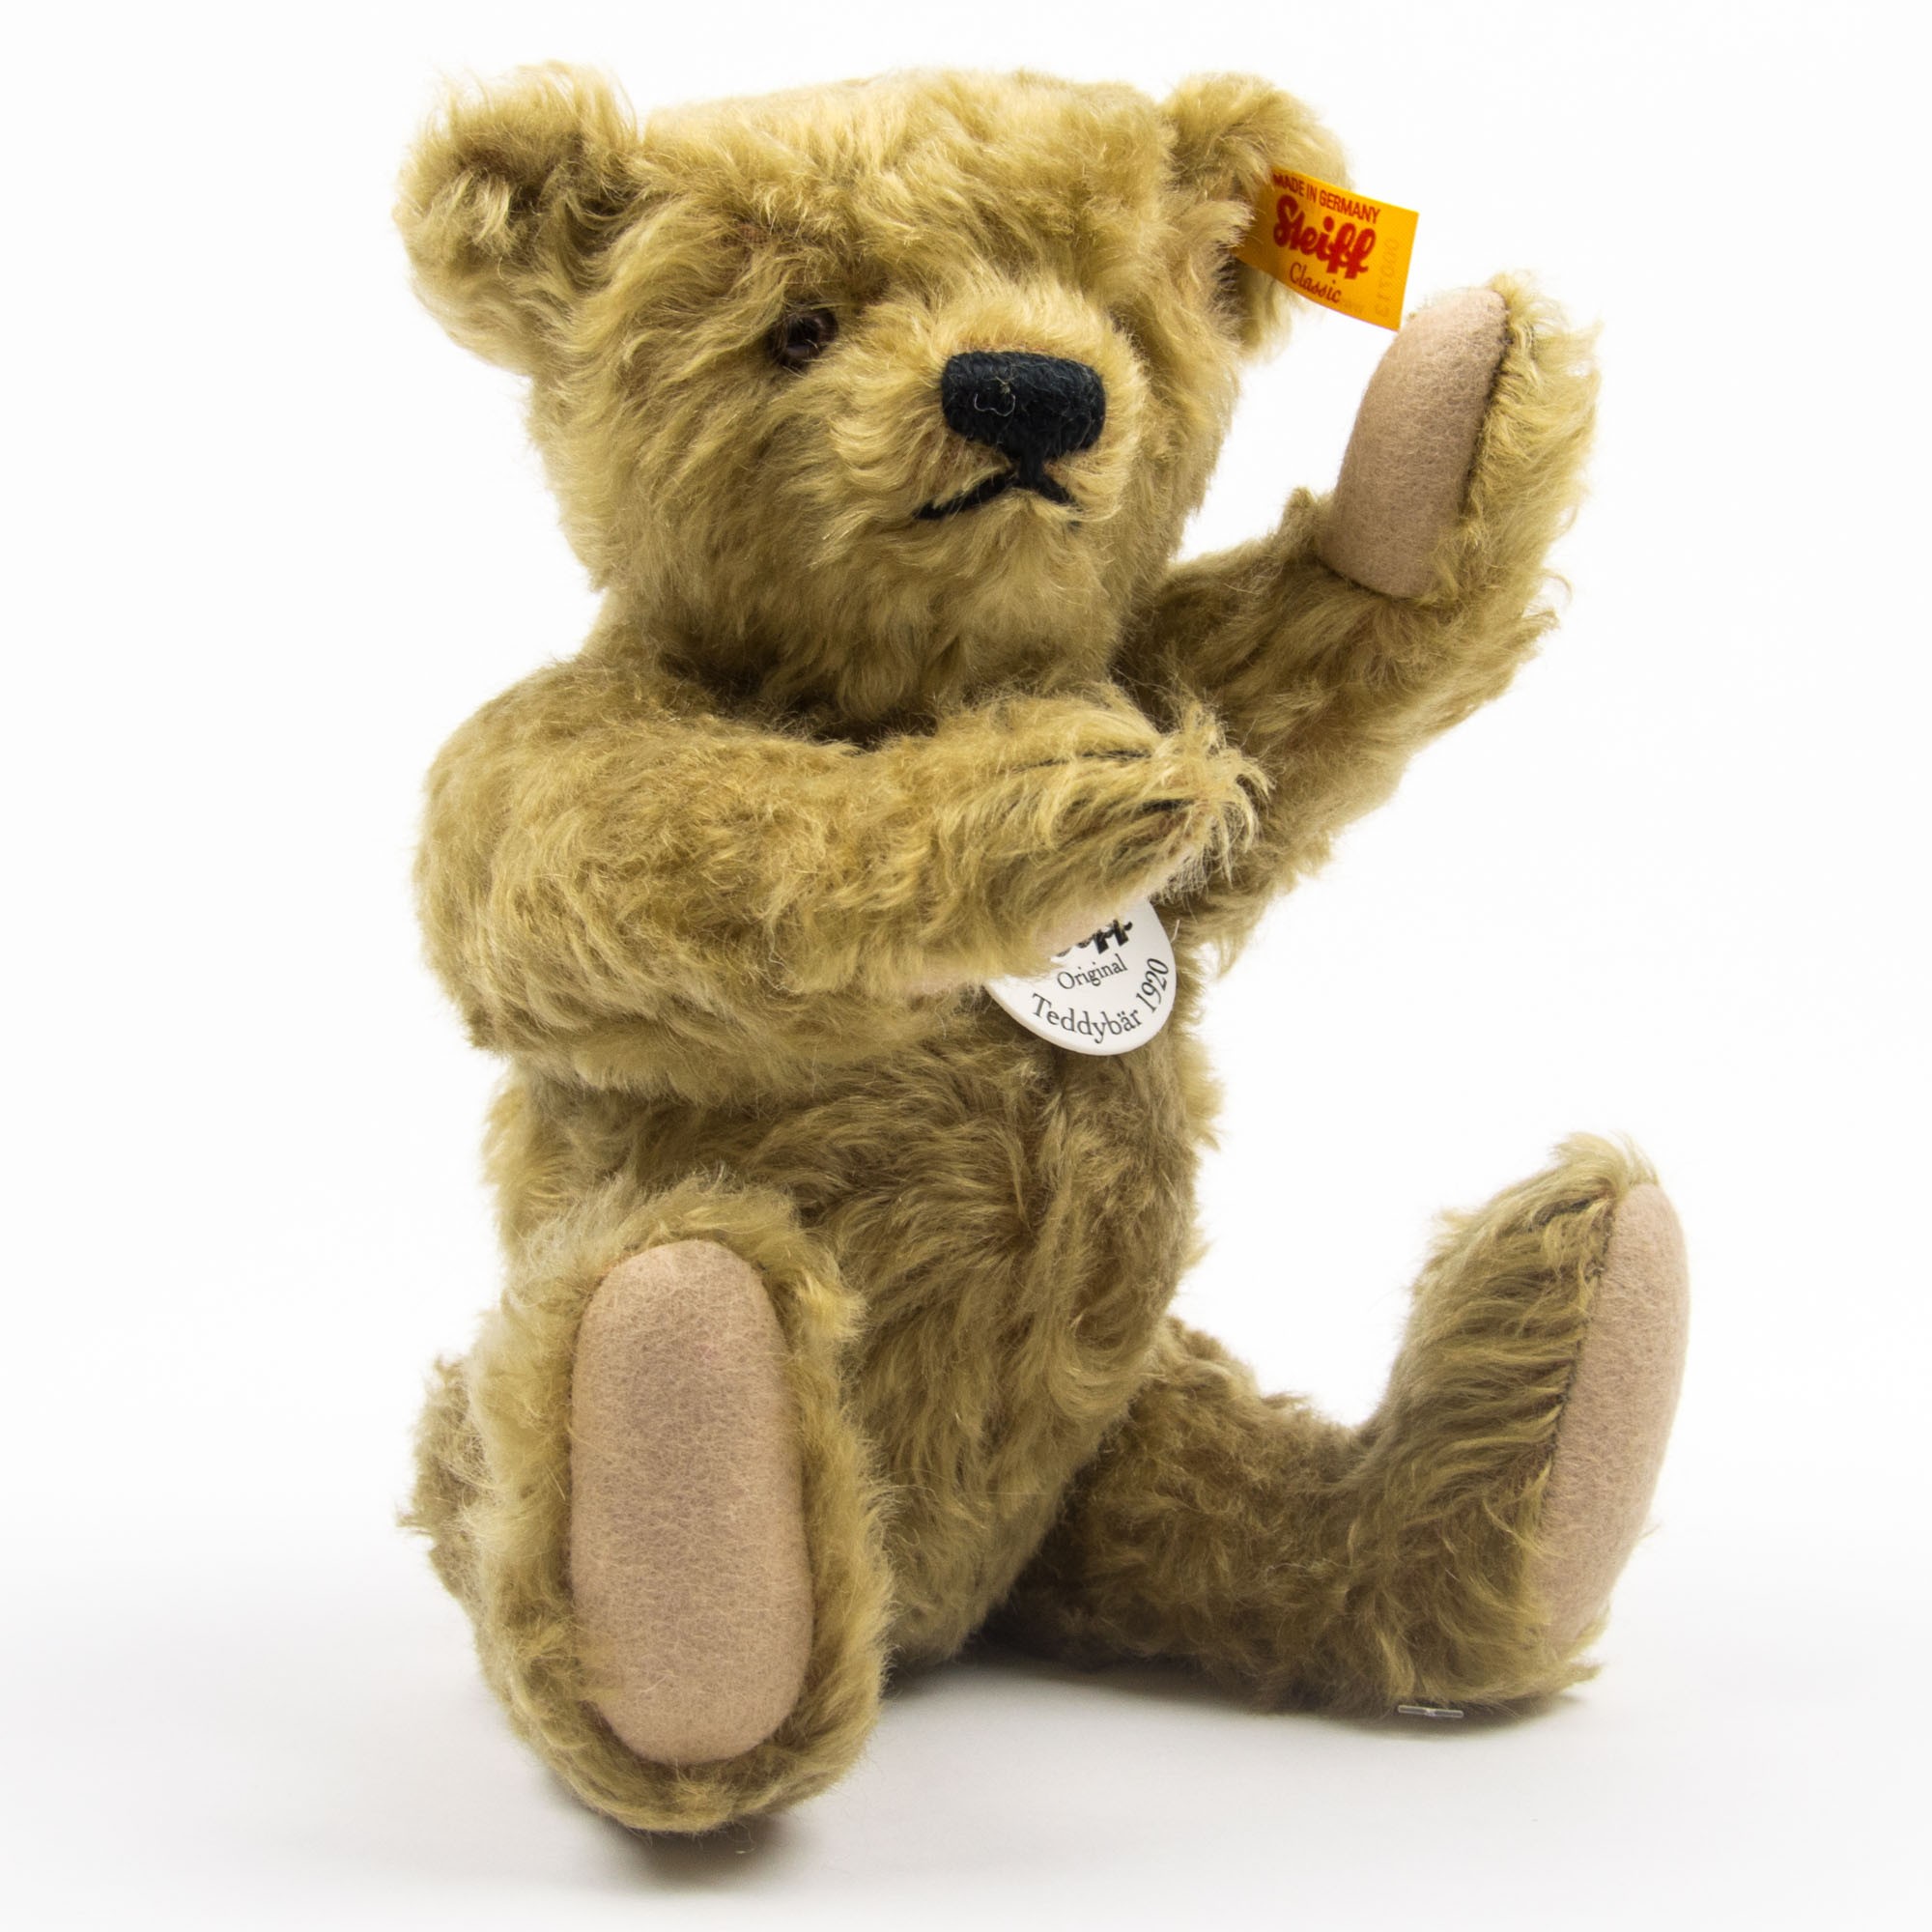 Steiff “Classic Teddy Bear” for Collectors | littlehipstar.com